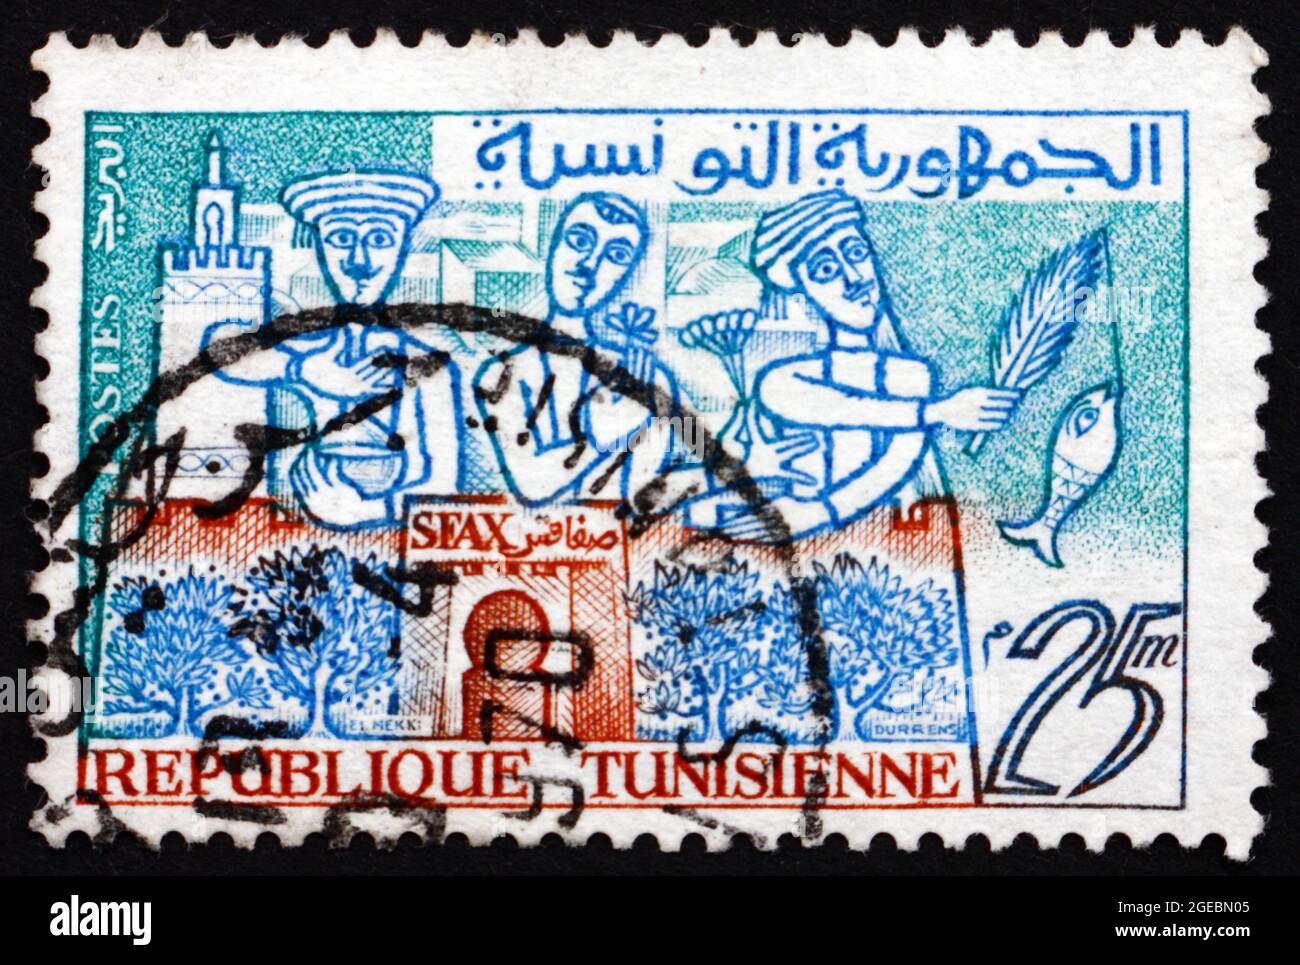 TUNISIE - VERS 1960: Un timbre imprimé en Tunisie montre pétrole, fleurs et poissons de Sfax, la capitale du gouvernorat de Sfax et du port méditerranéen, circ Banque D'Images